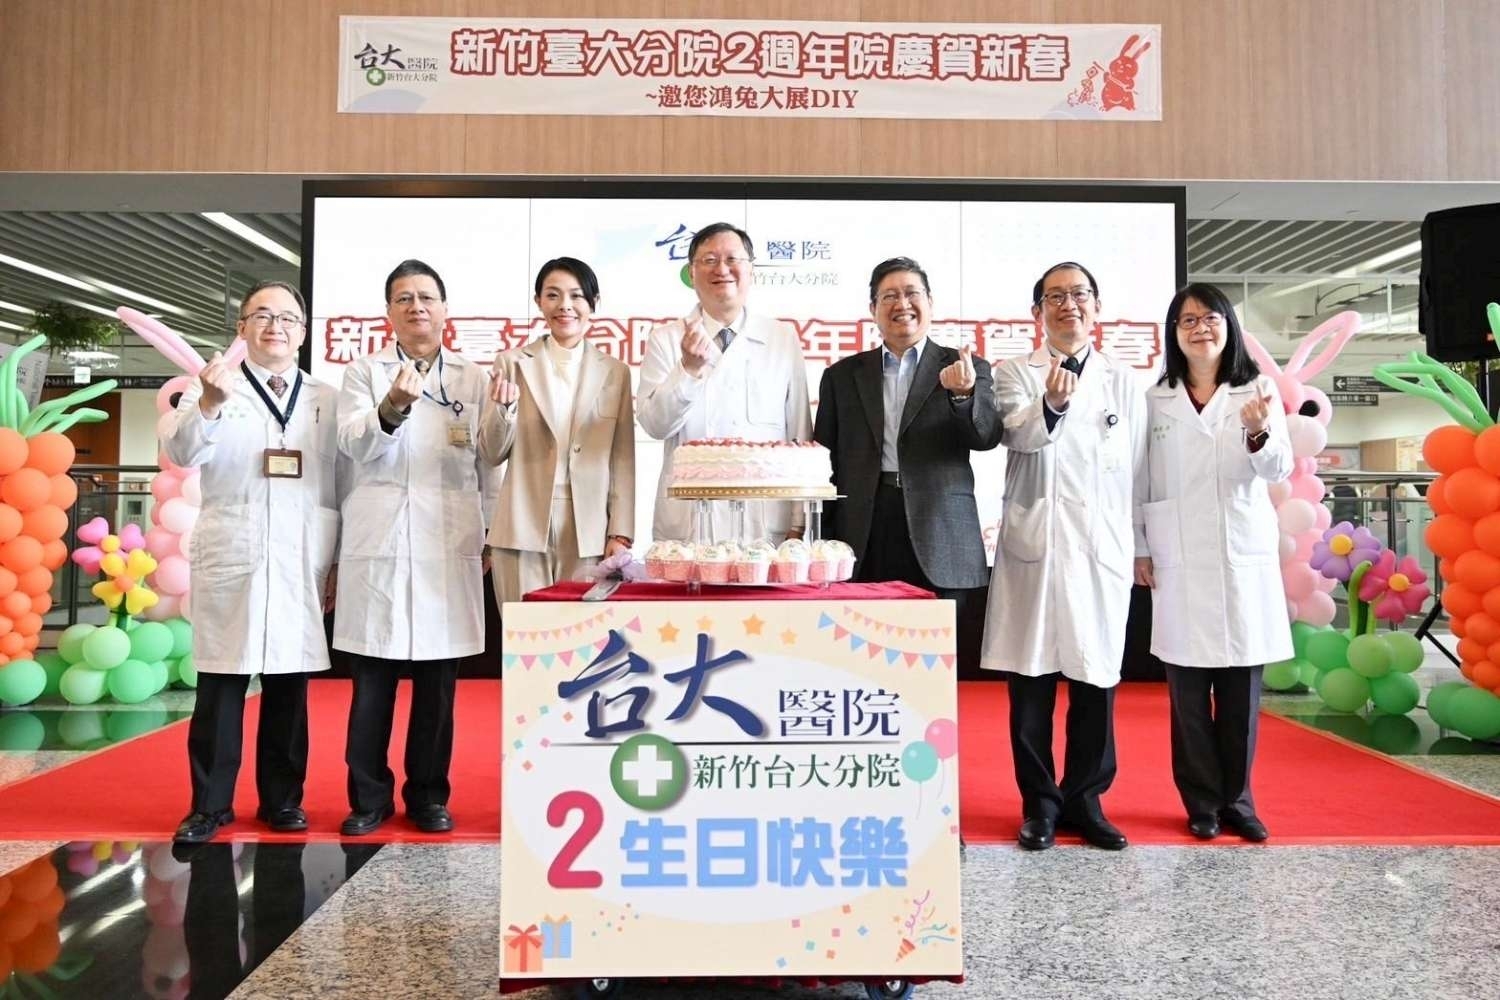 高虹安市長：提供大新竹居民「醫學中心規模」醫療照護